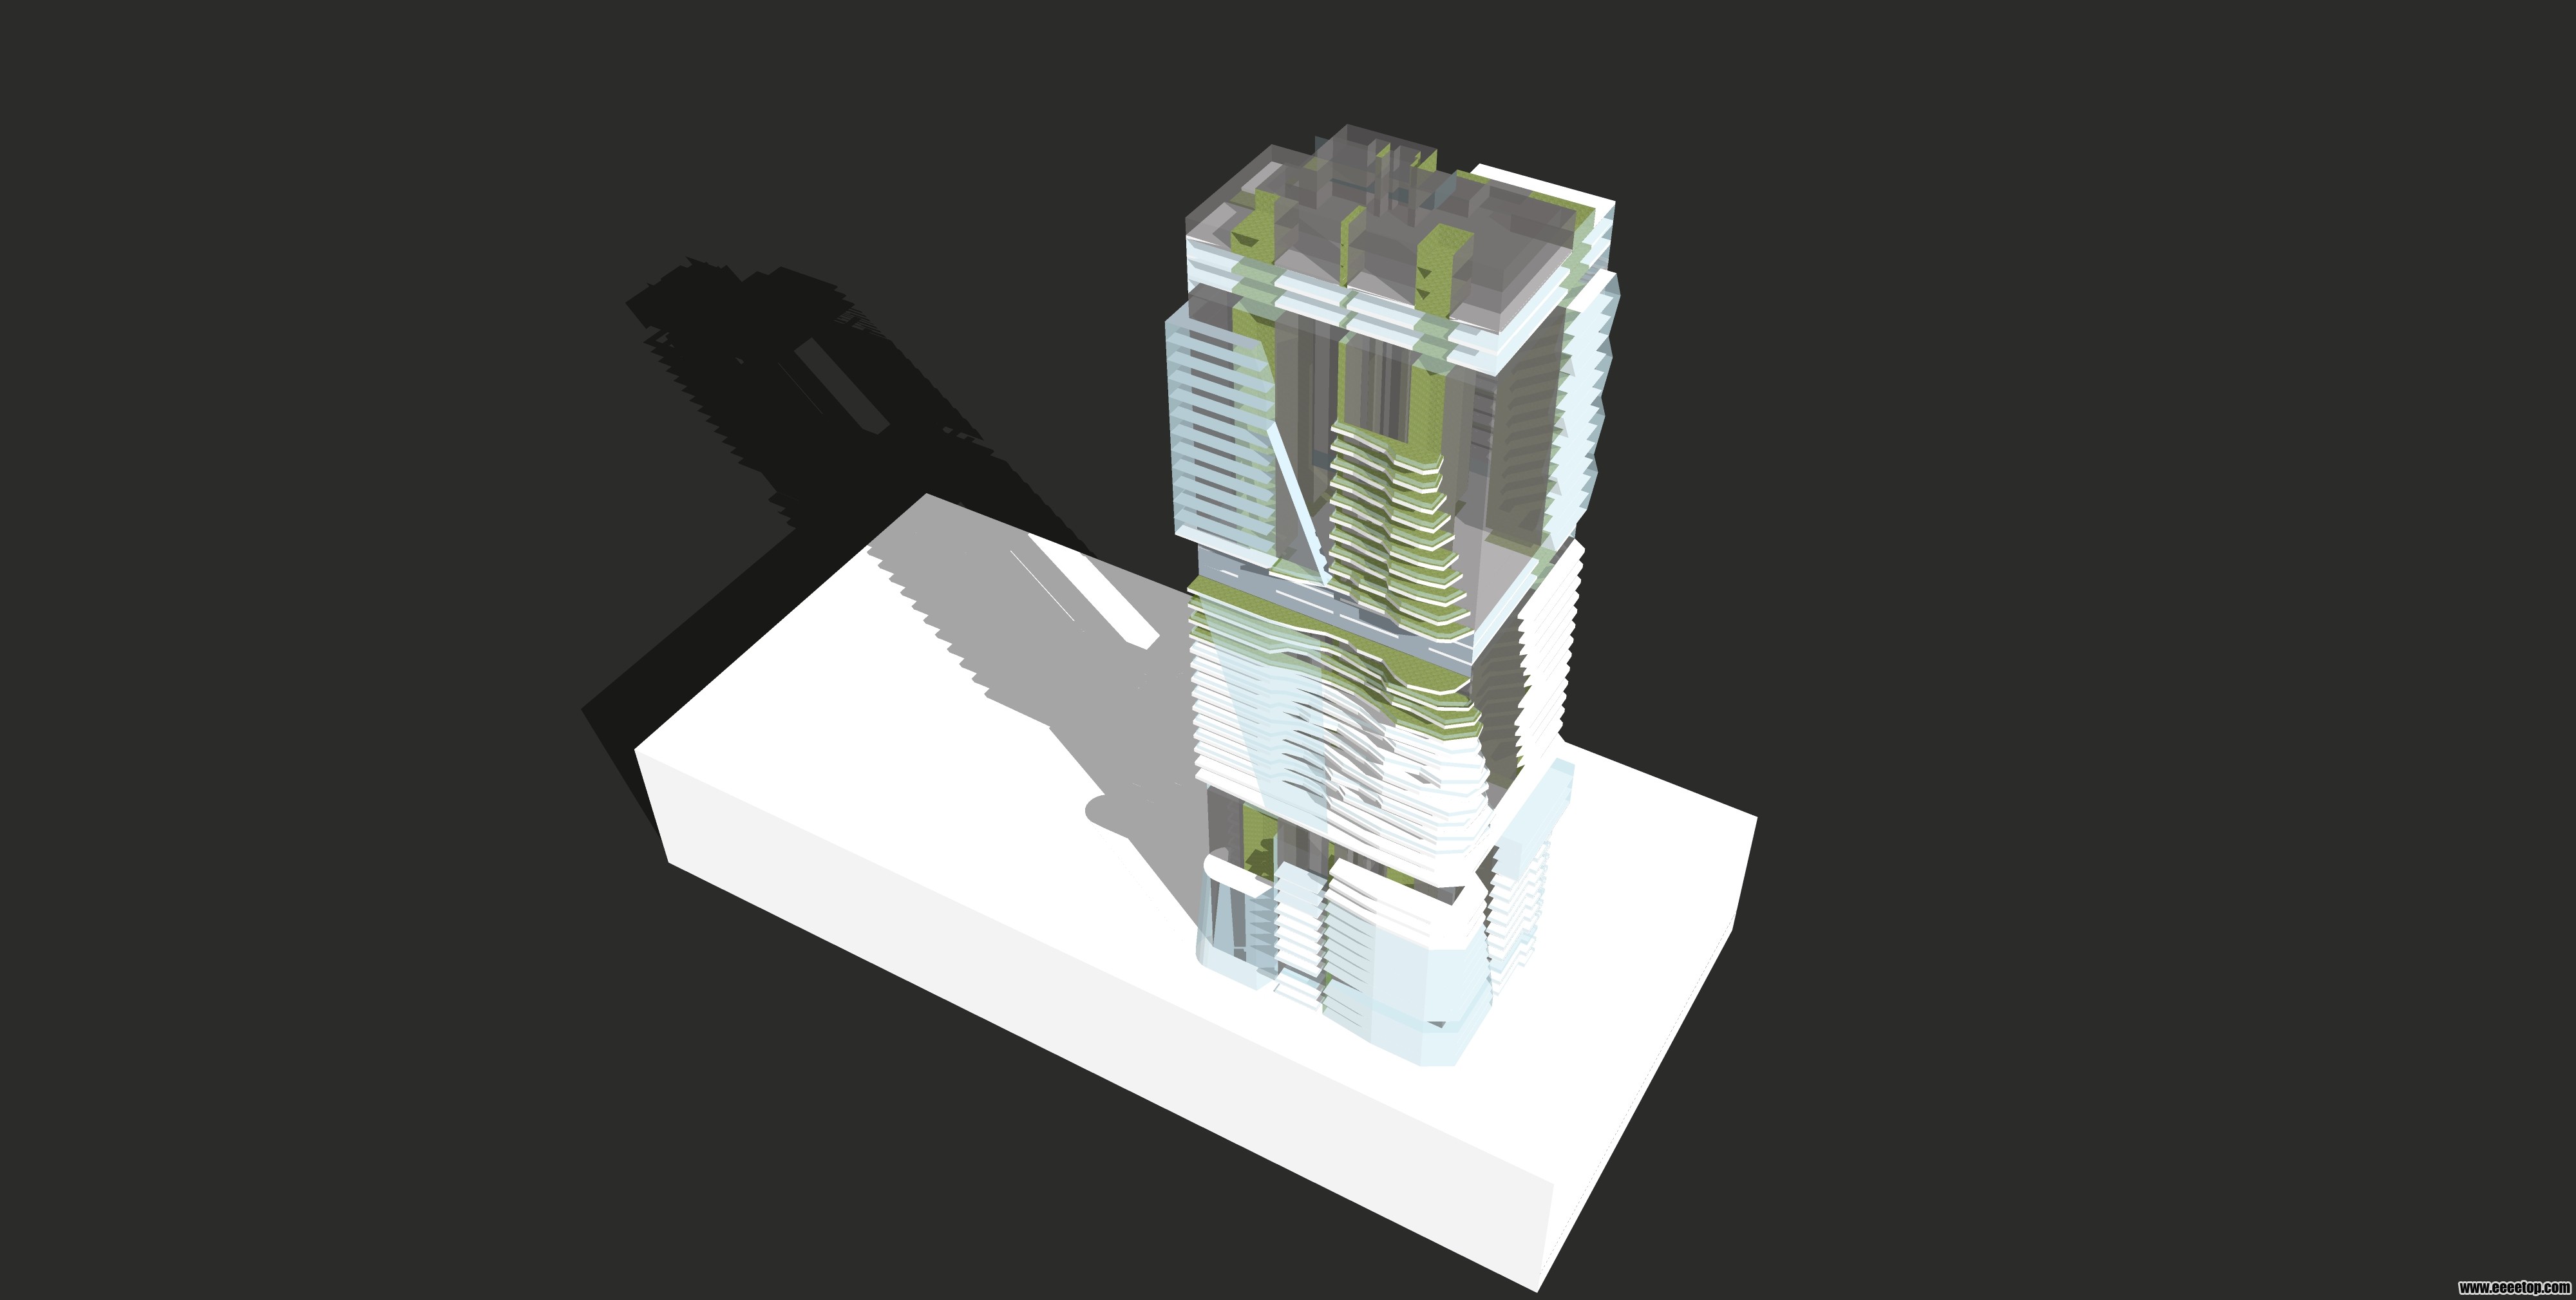 一个绿色建筑概念方案 - 可视化设计 - E拓建筑